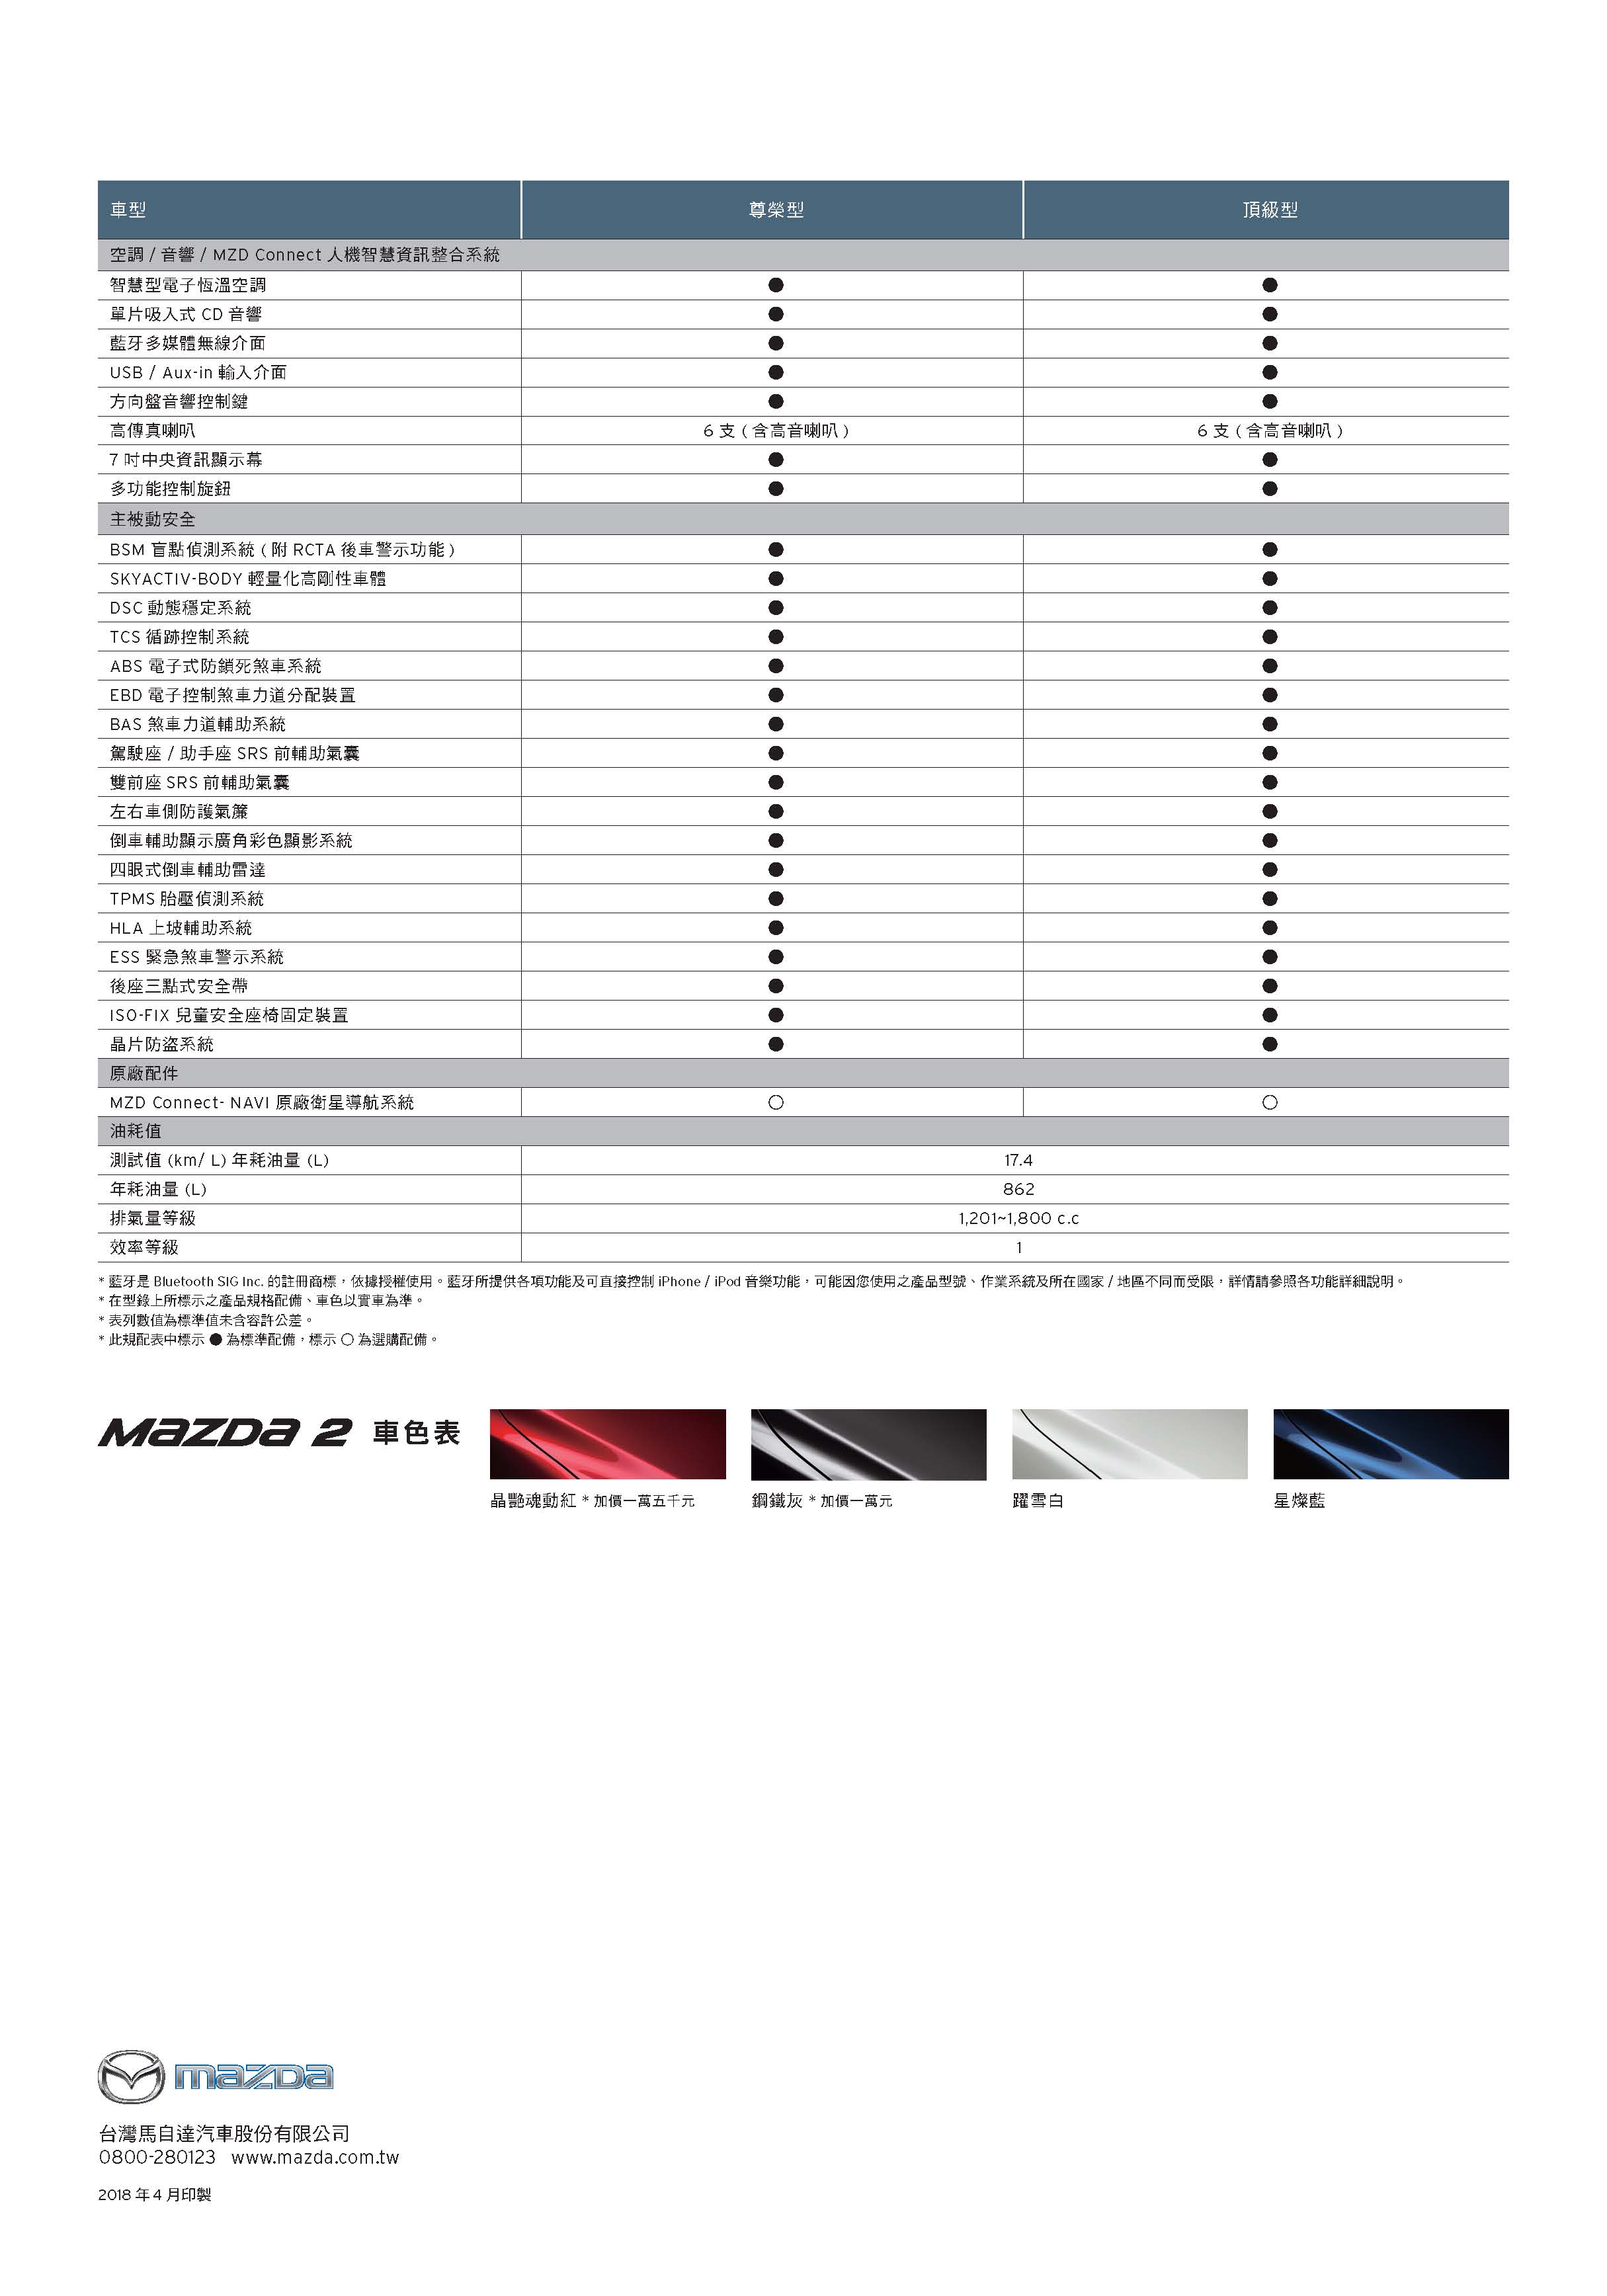 2019 Mazda2 規格配備表_頁面_2